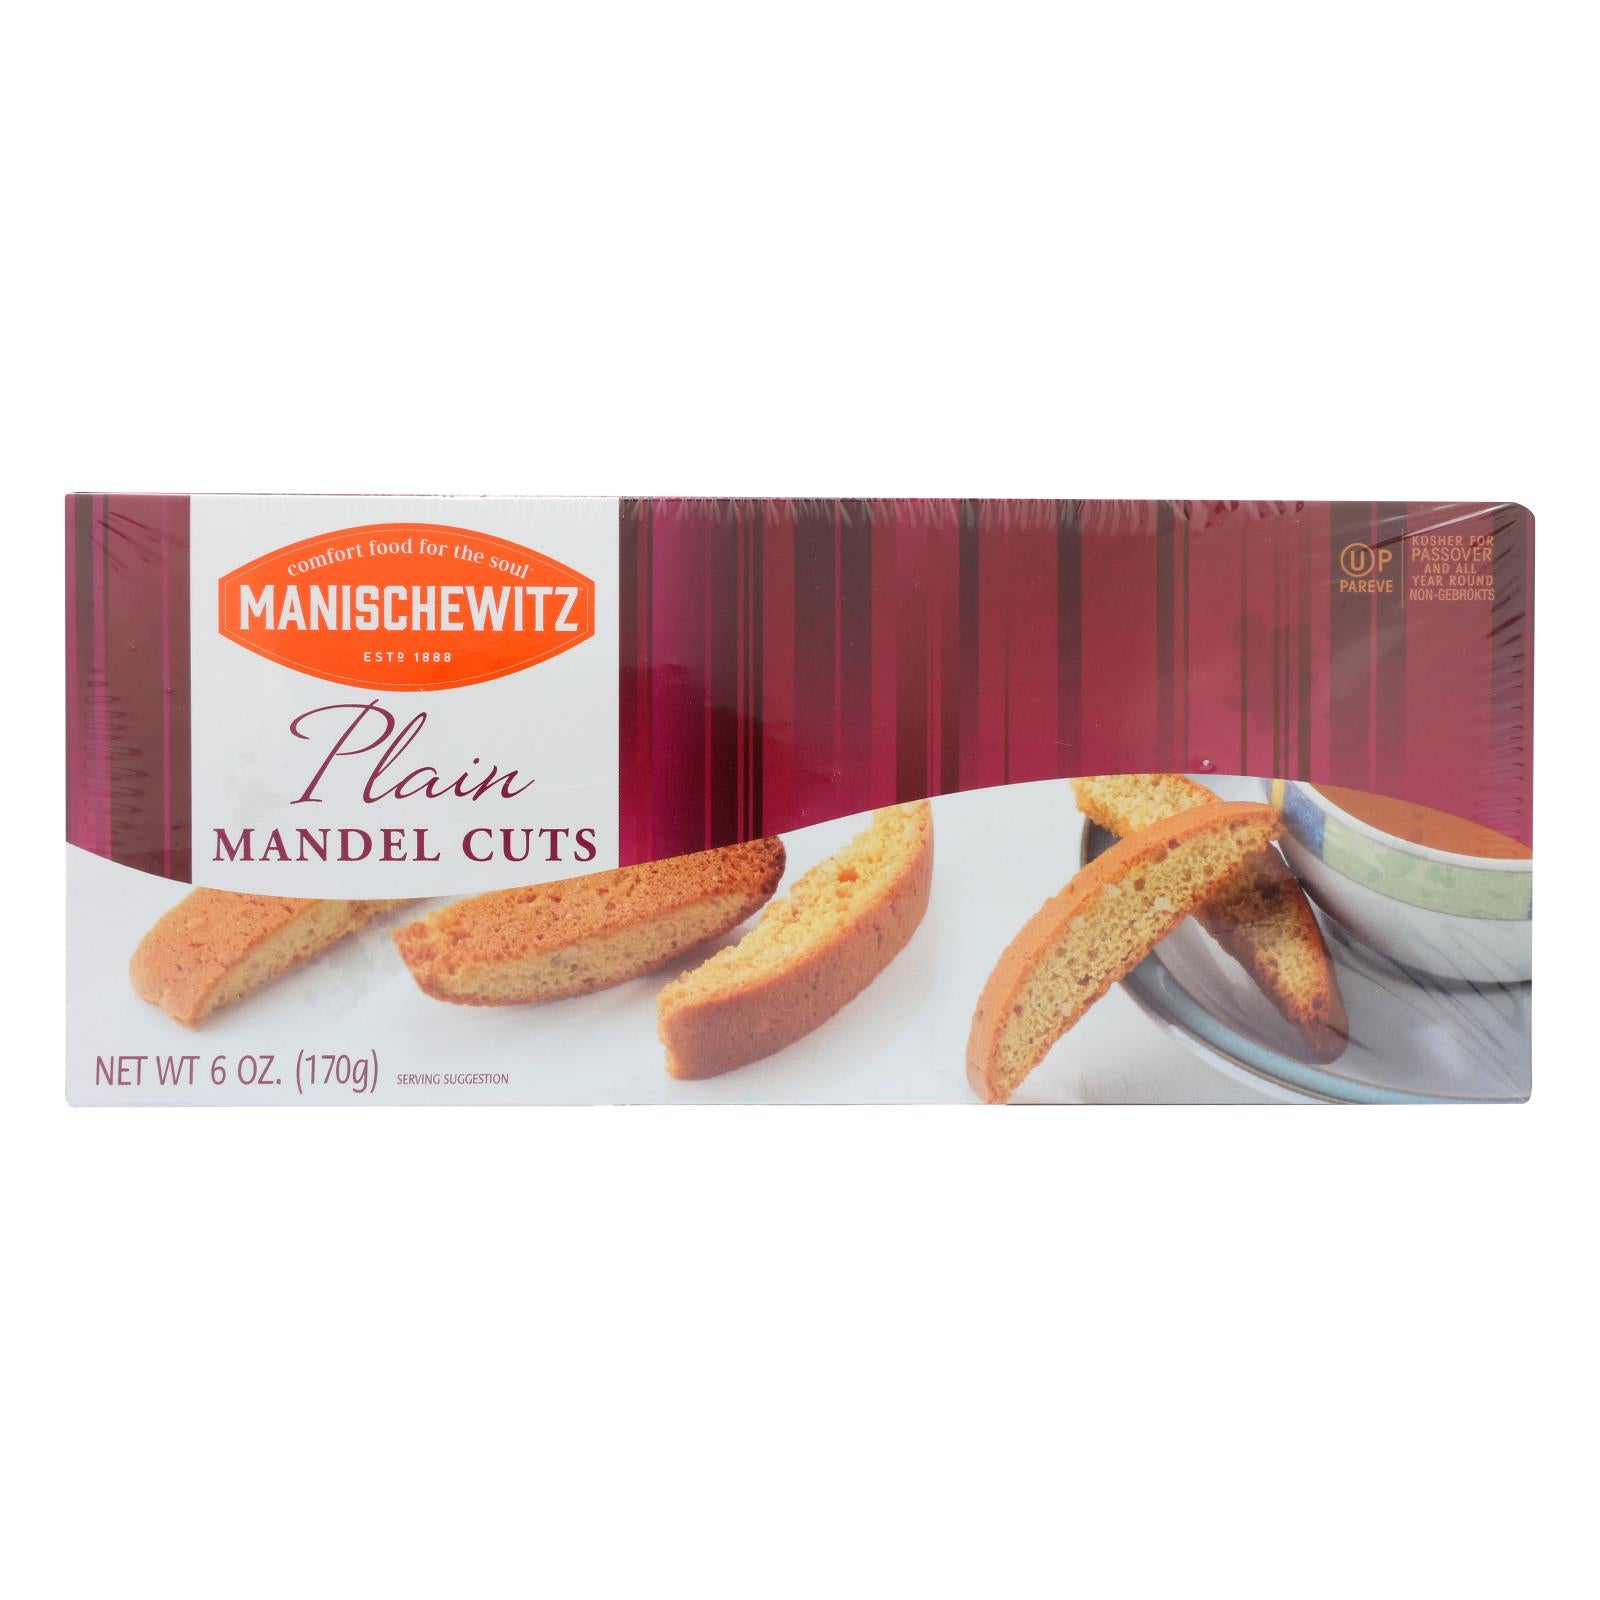 Manischewitz Plain Mandel Cuts - Case of 12 - 6 OZ